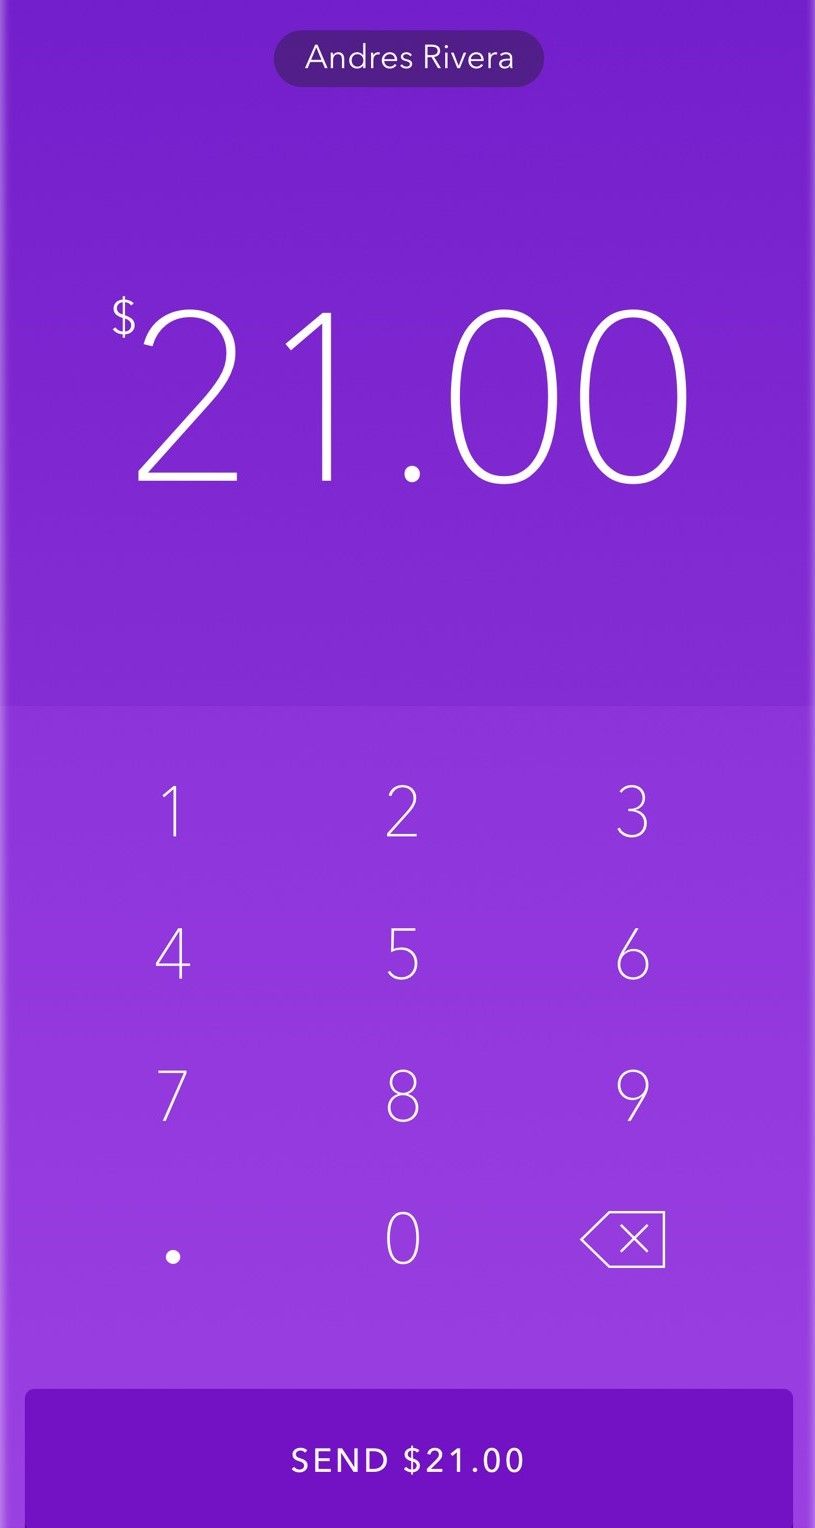 O aplicativo Zelle mostrando quanto dinheiro será enviado ao destinatário